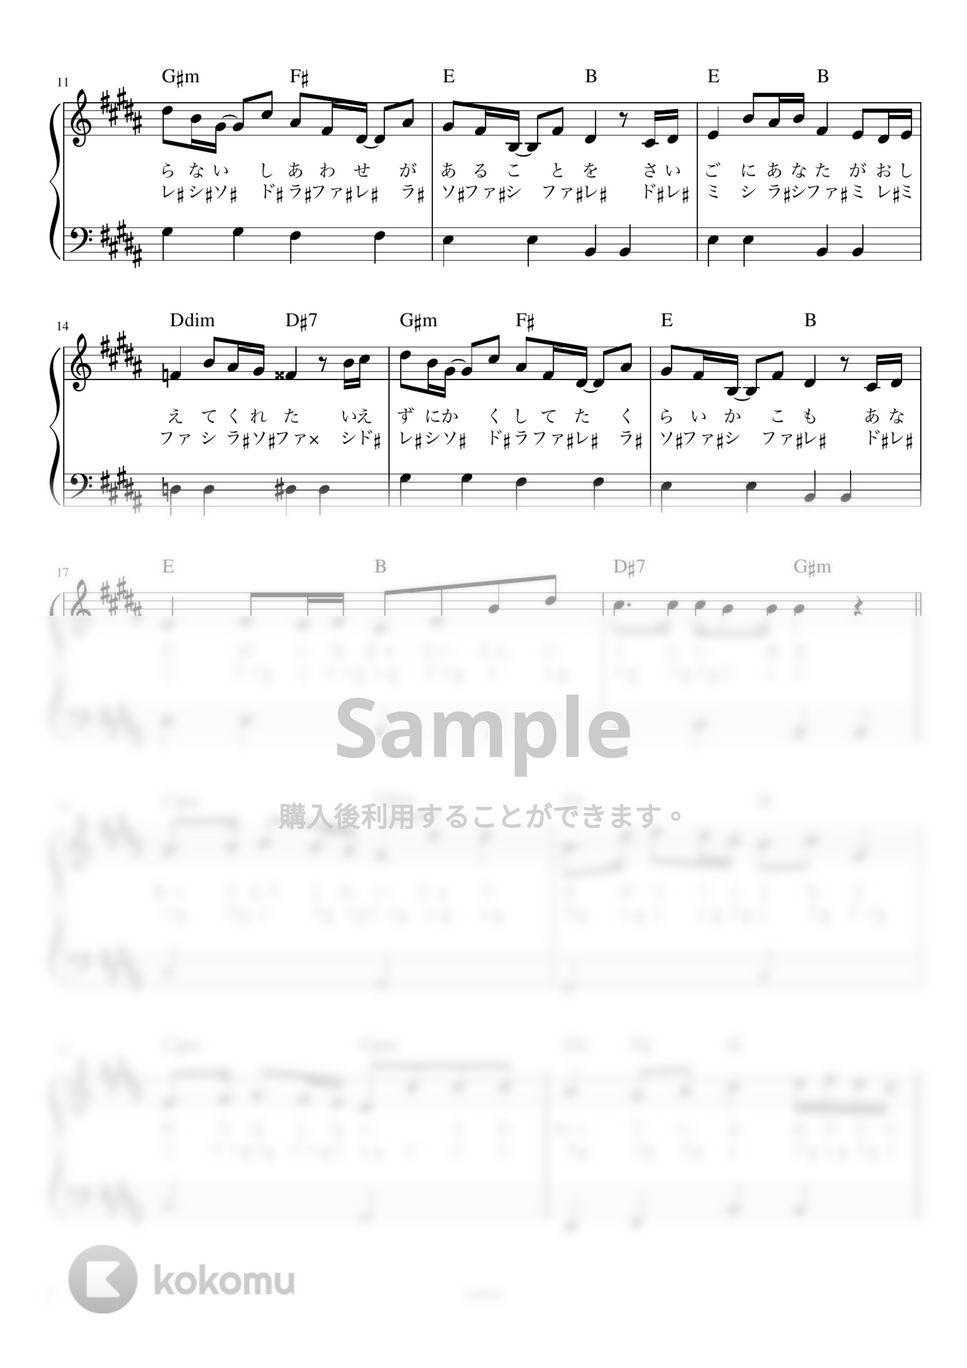 米津 玄師 - Lemon (ピアノ かんたん 歌詞付き ドレミ付き 初心者) by piano.tokyo